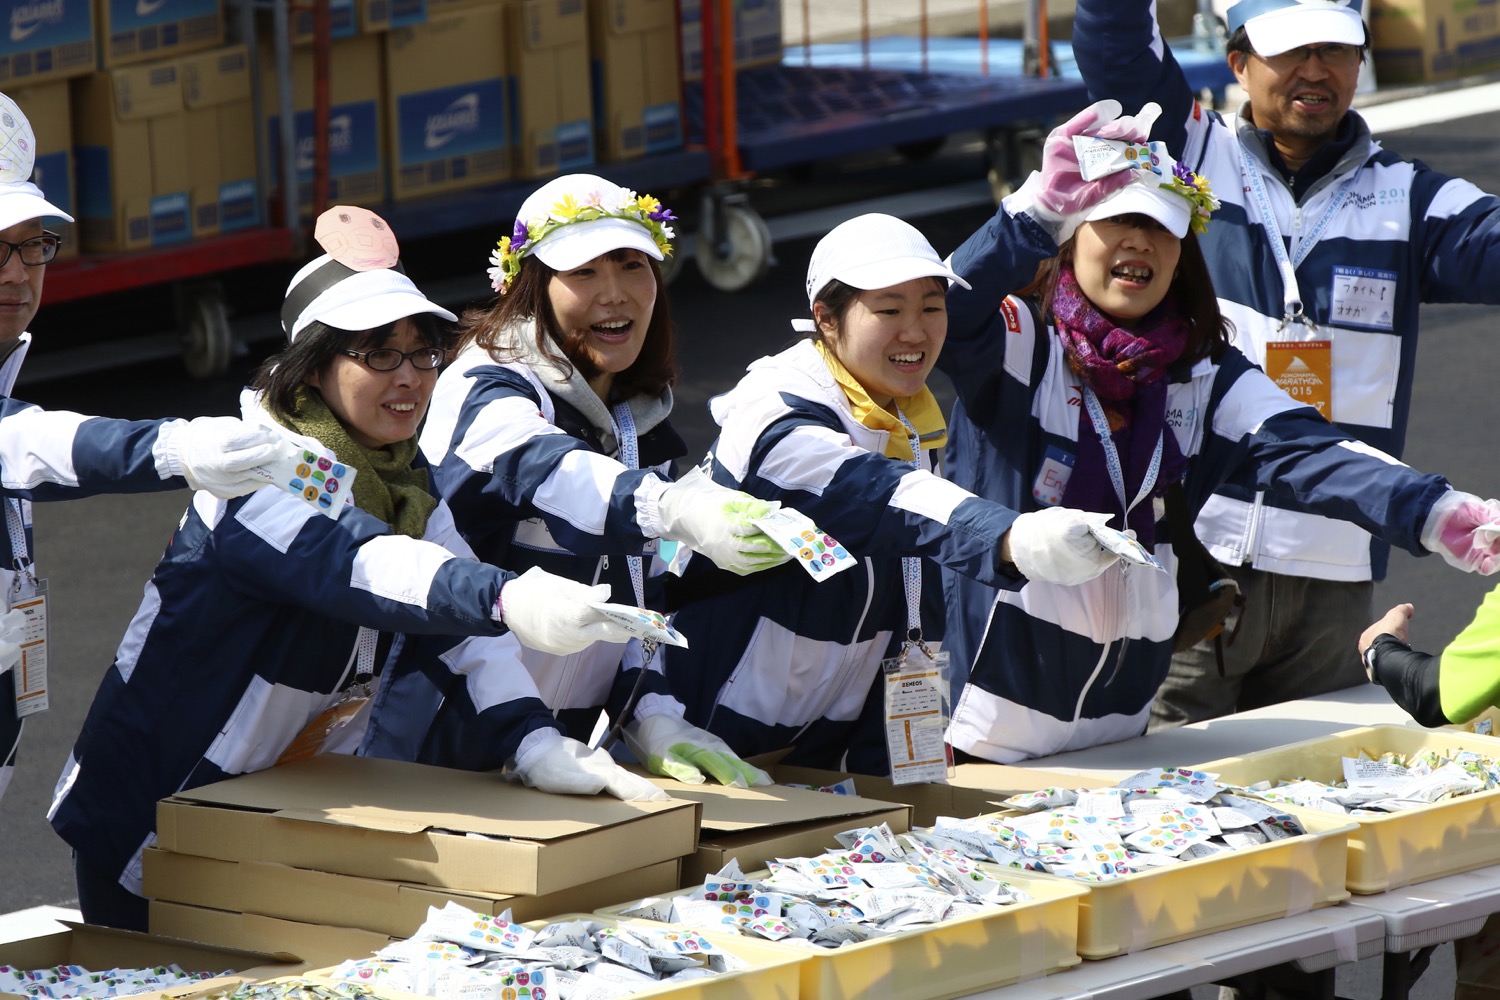 子どもと楽しむ横浜マラソン チアダンスにアンパンマンも登場の 給水パフォーマンス を見に行こう 3月13日 日 横浜 湘南で子供と遊ぶ あそびい横浜 湘南